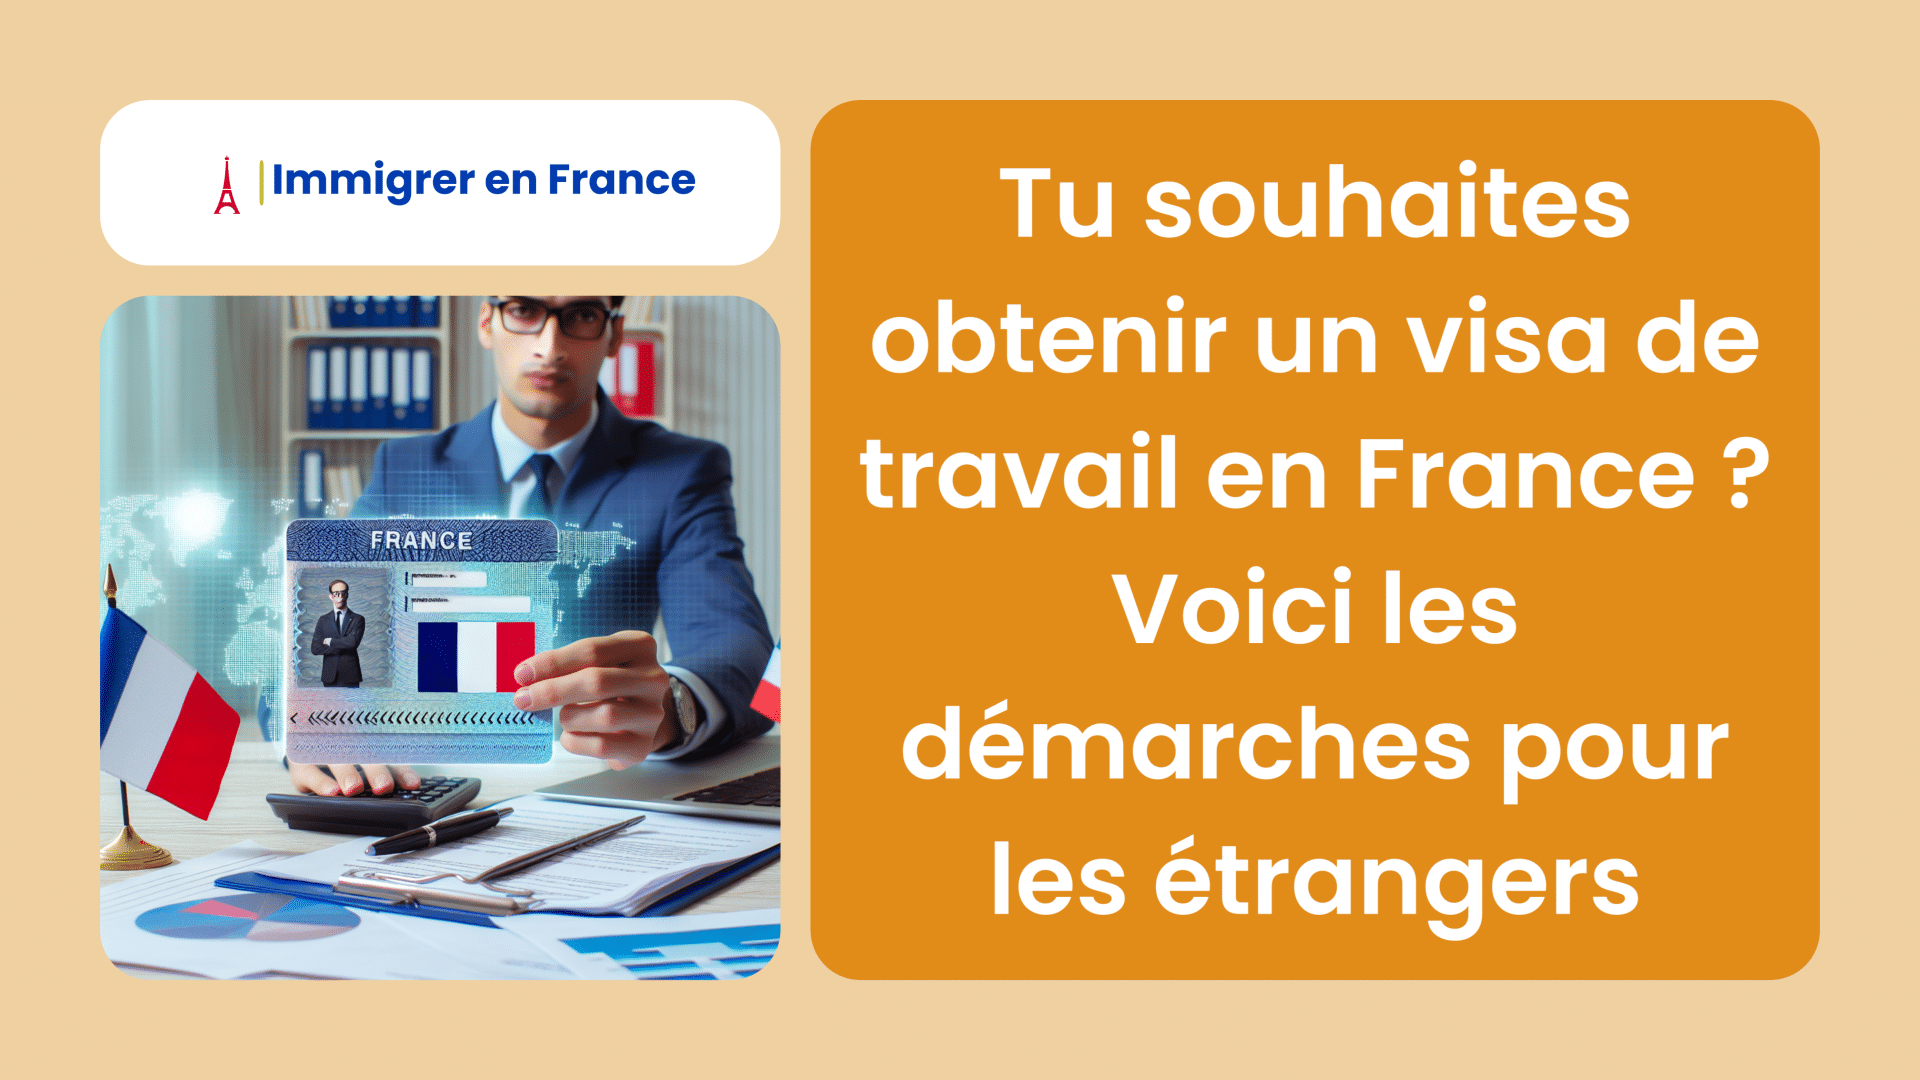 Tu souhaites obtenir un visa de travail en France ! Voici les démarches pour les étrangers